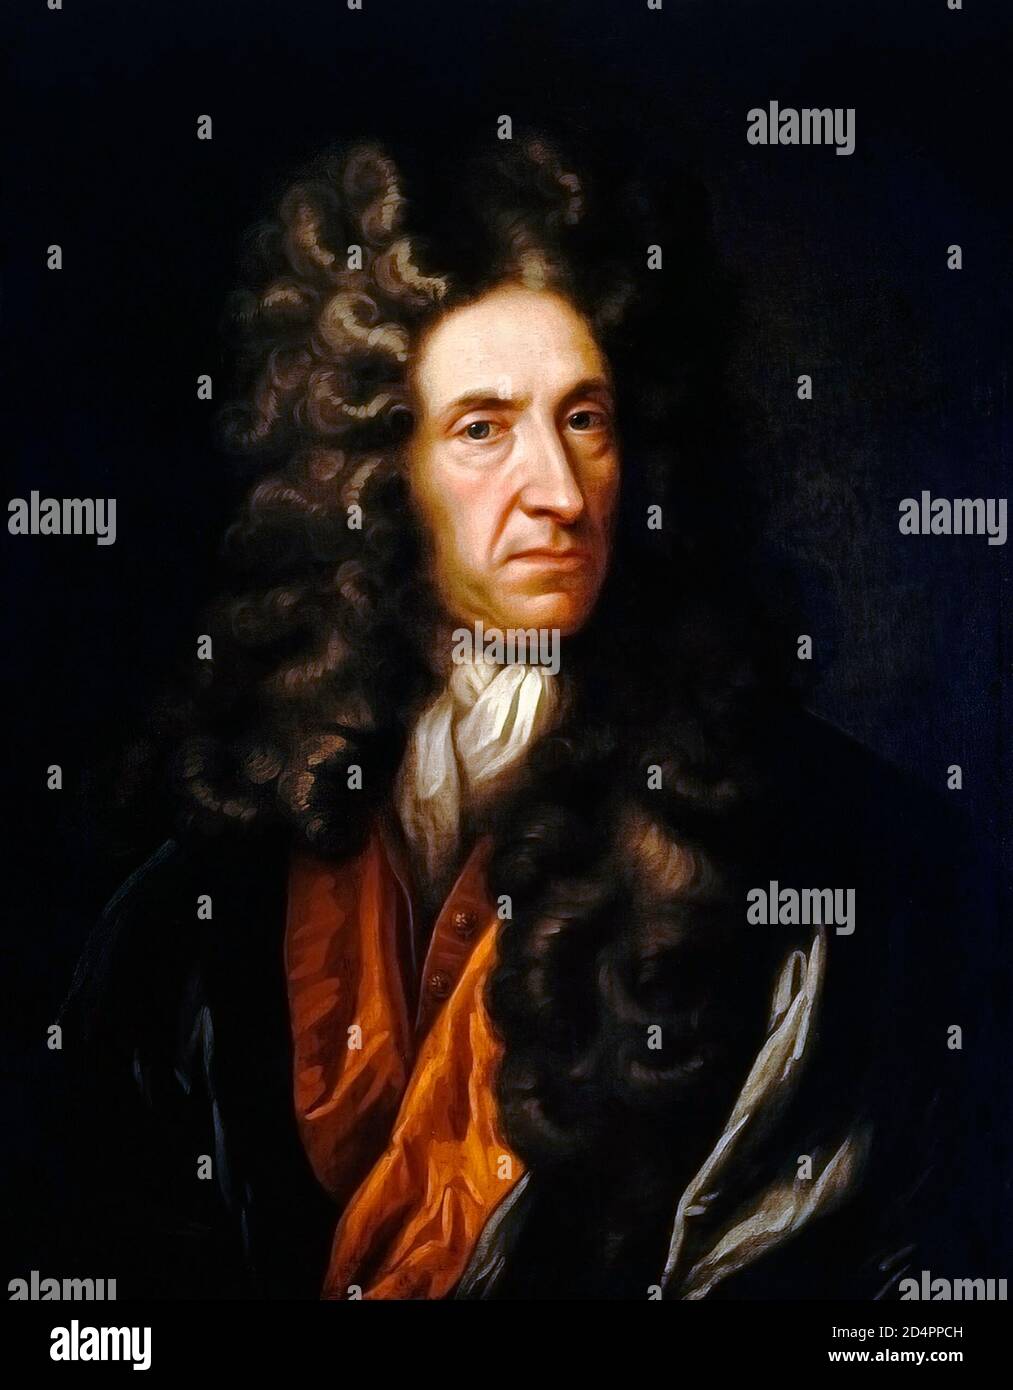 Daniel Defoe. Retrato del comerciante inglés, escritor, periodista, panfletero y espía, Daniel Defoe (nacido Daniel Foe, c. 1660-1731), óleo sobre lienzo Foto de stock